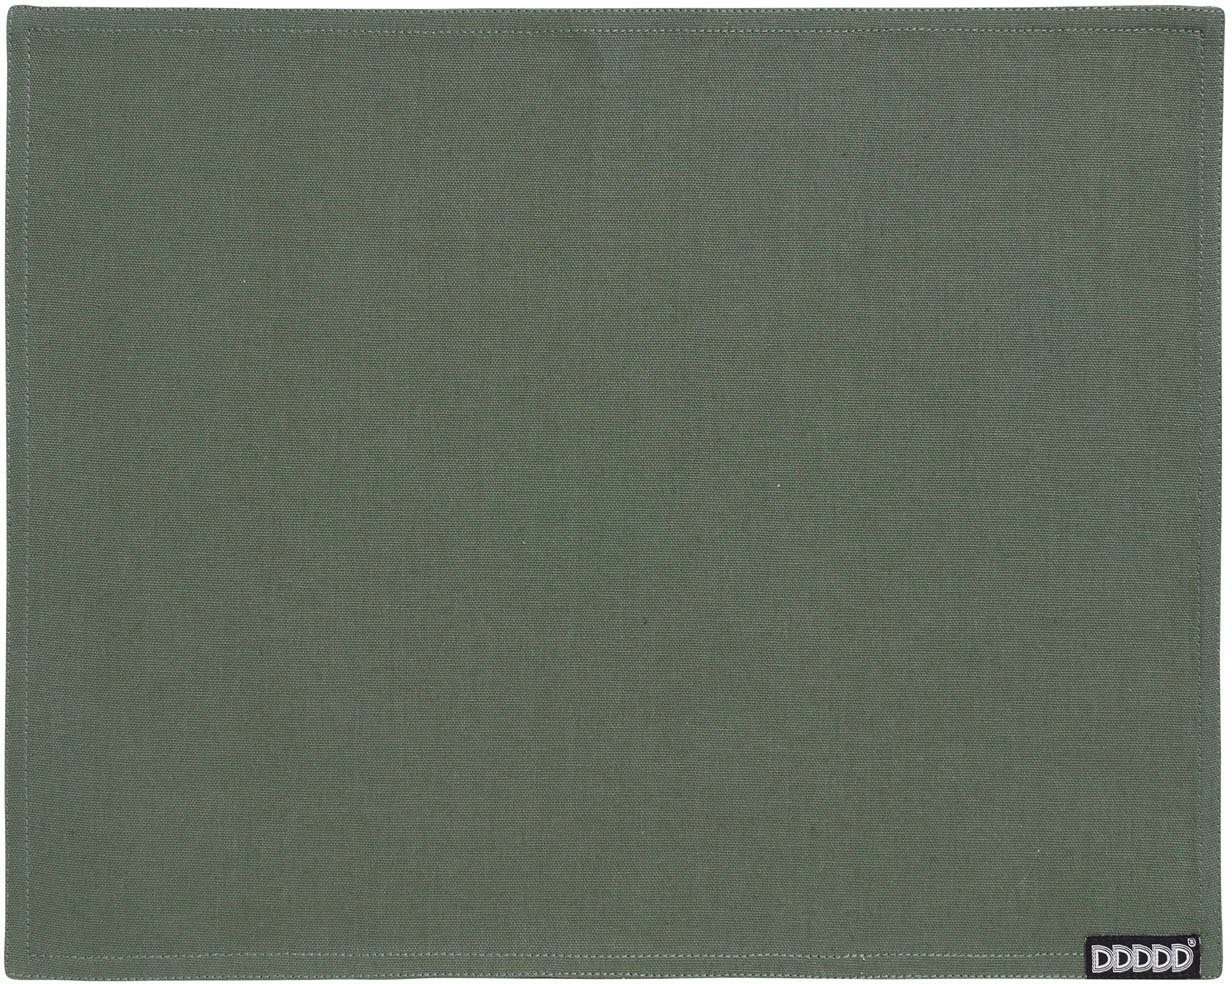 tannengrün 2-St), DDDDD, 35x45 Platzdecke, Platzset, cm, (Set, Baumwolle Kit,